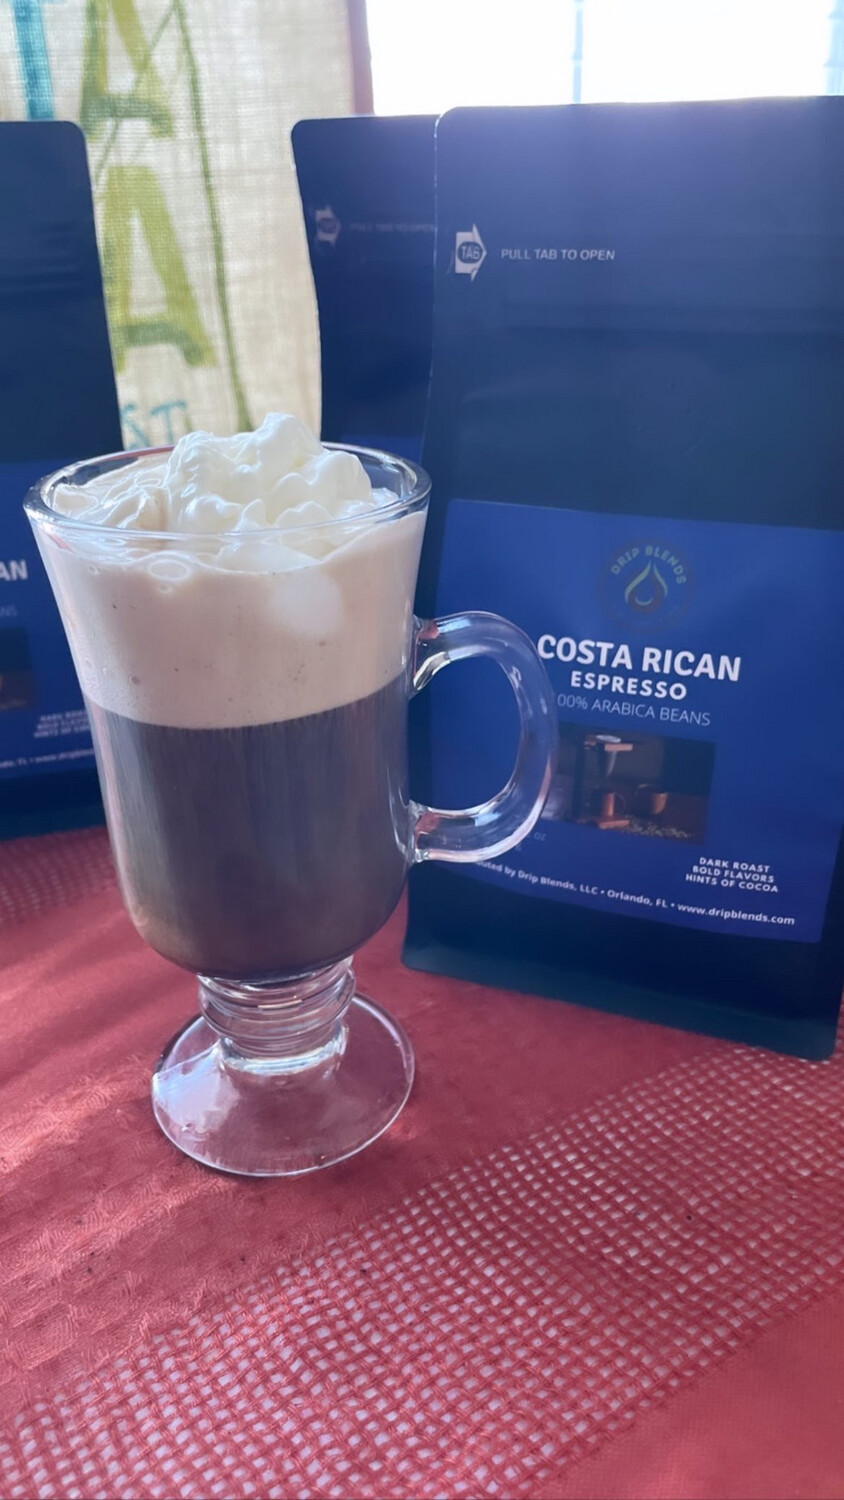 Costa Rican Espresso